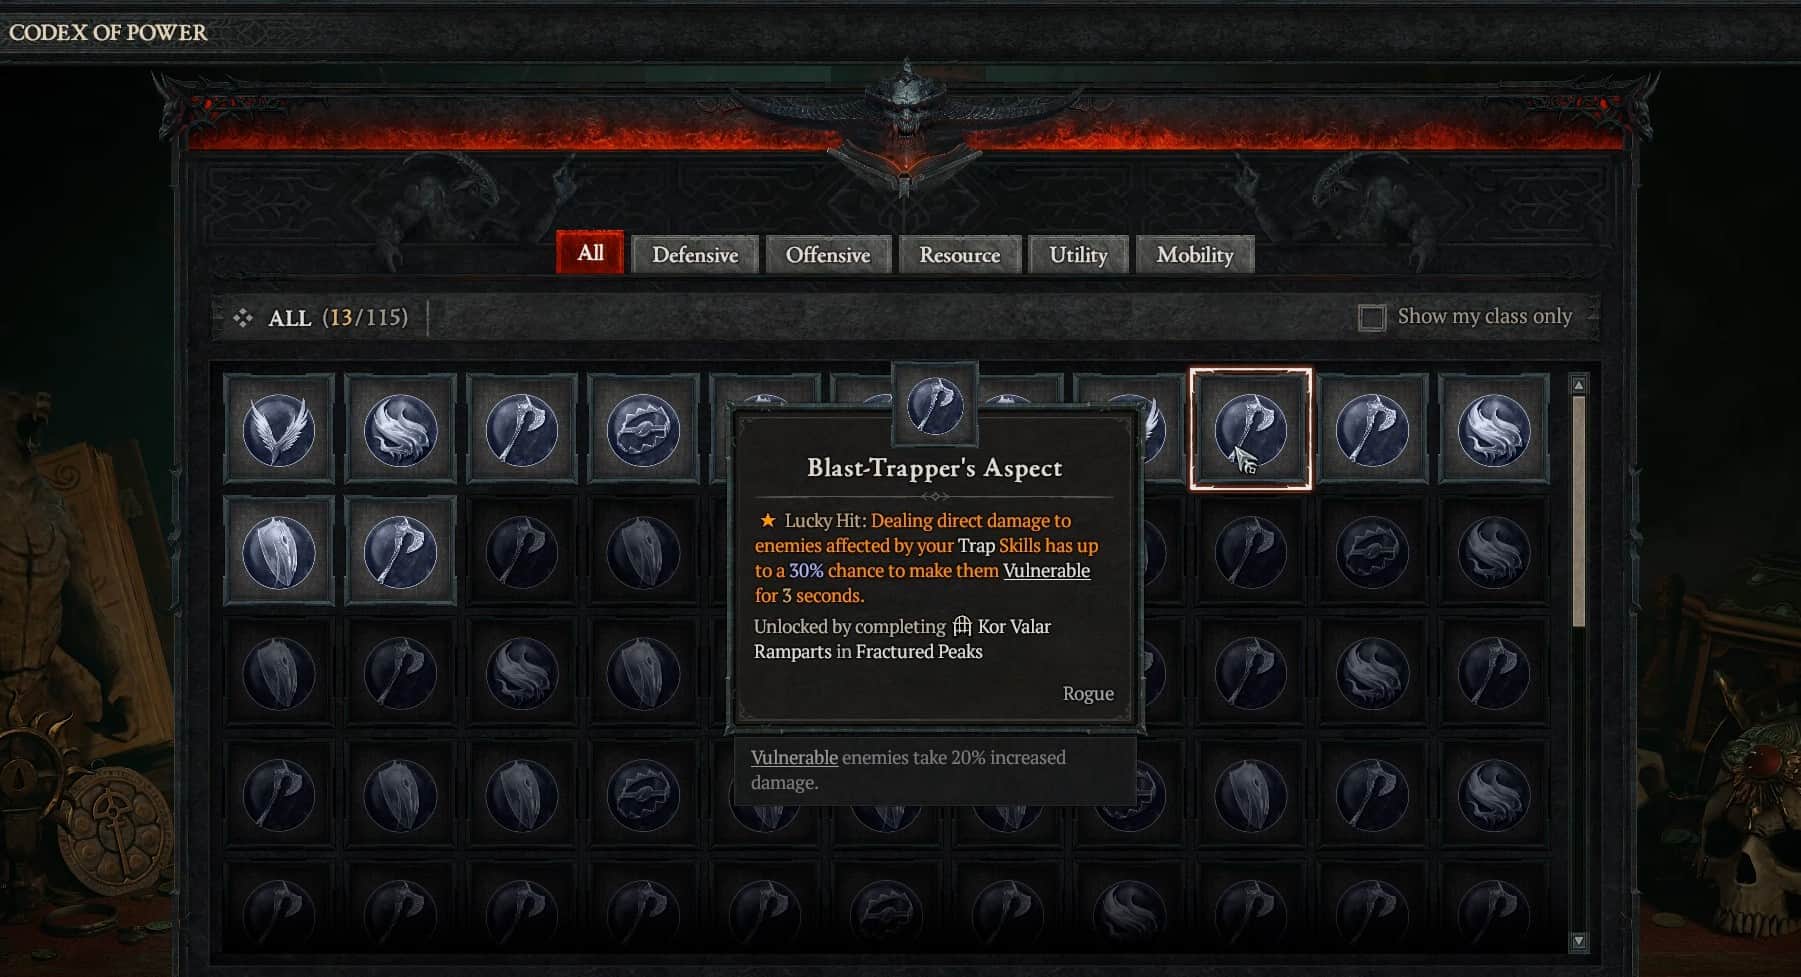 Blast-Trapper's Aspect in Diablo 4